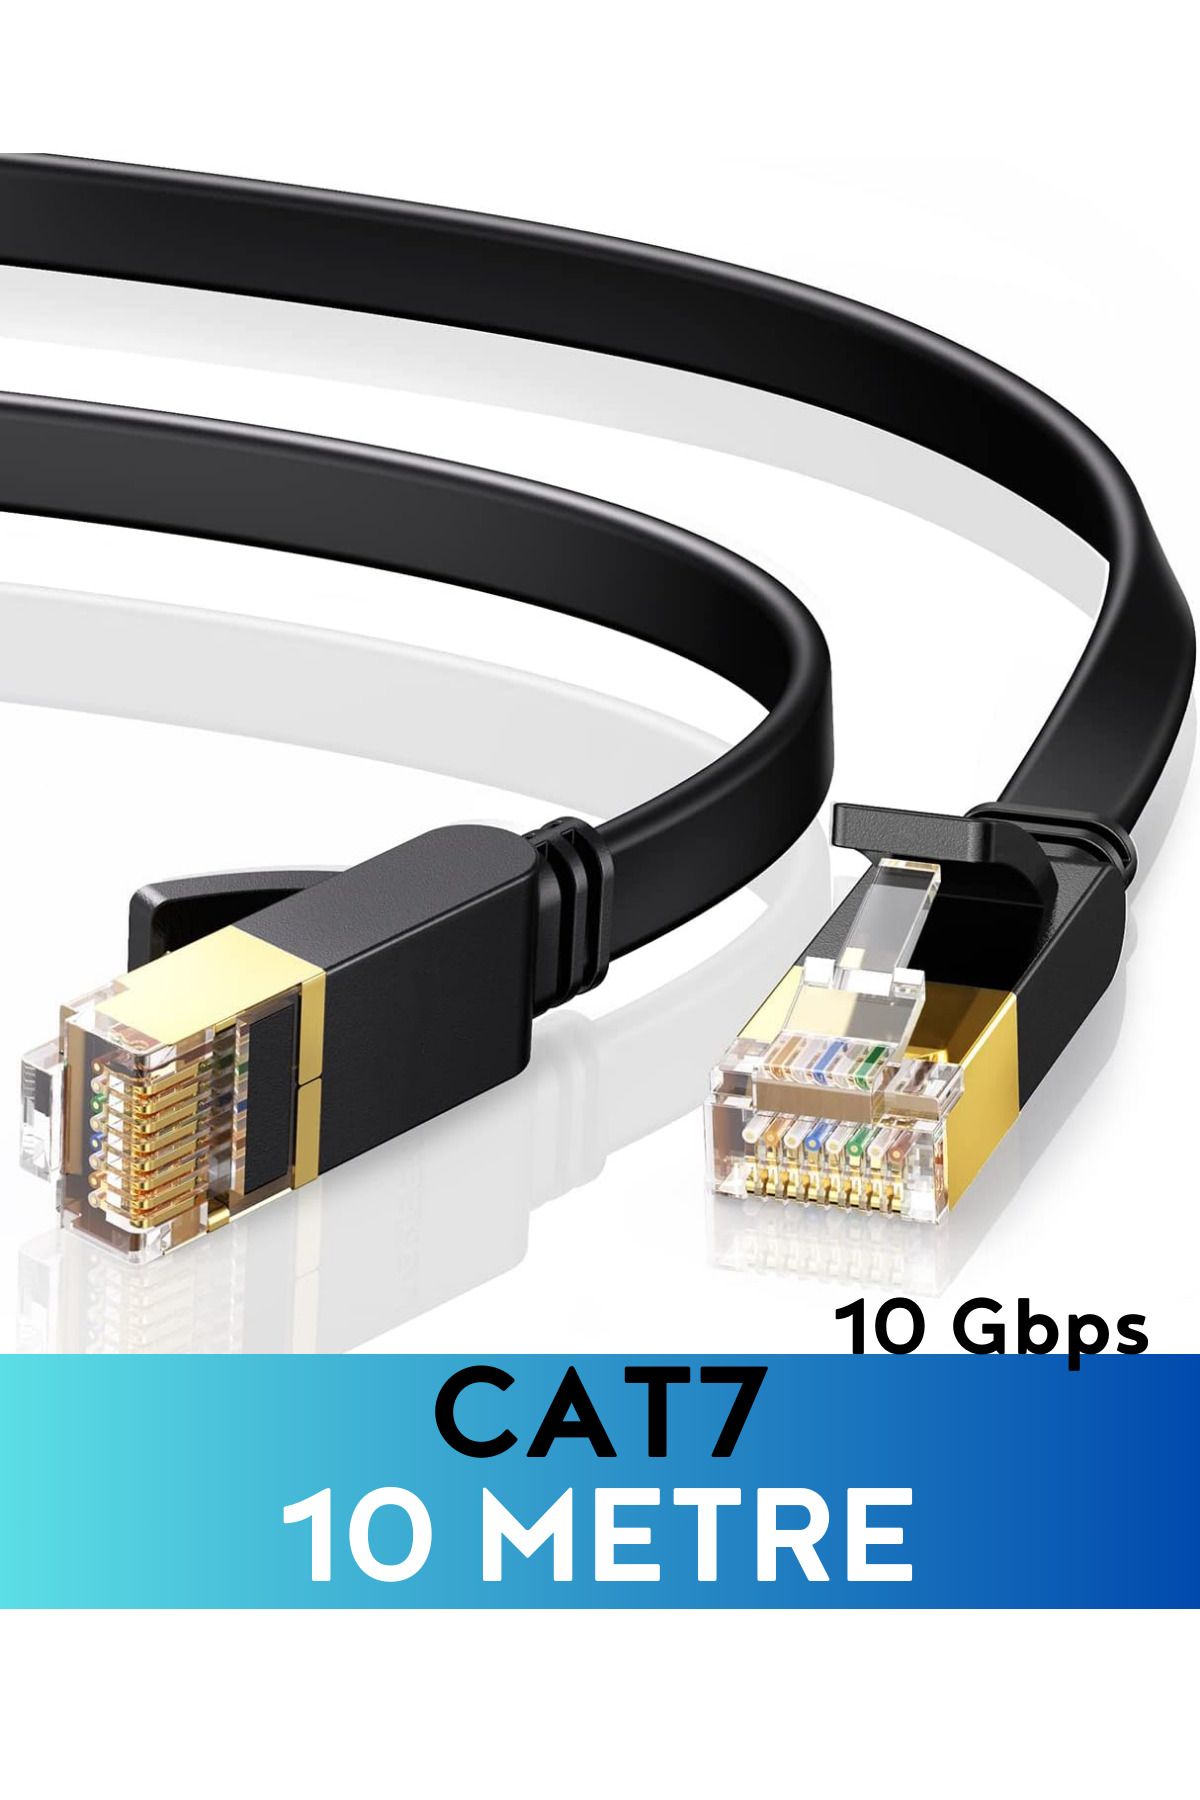 Vetech CAT7 10 Metre Ethernet Kablosu 10Gbps Premium İnternet Lan Kablo 10mt